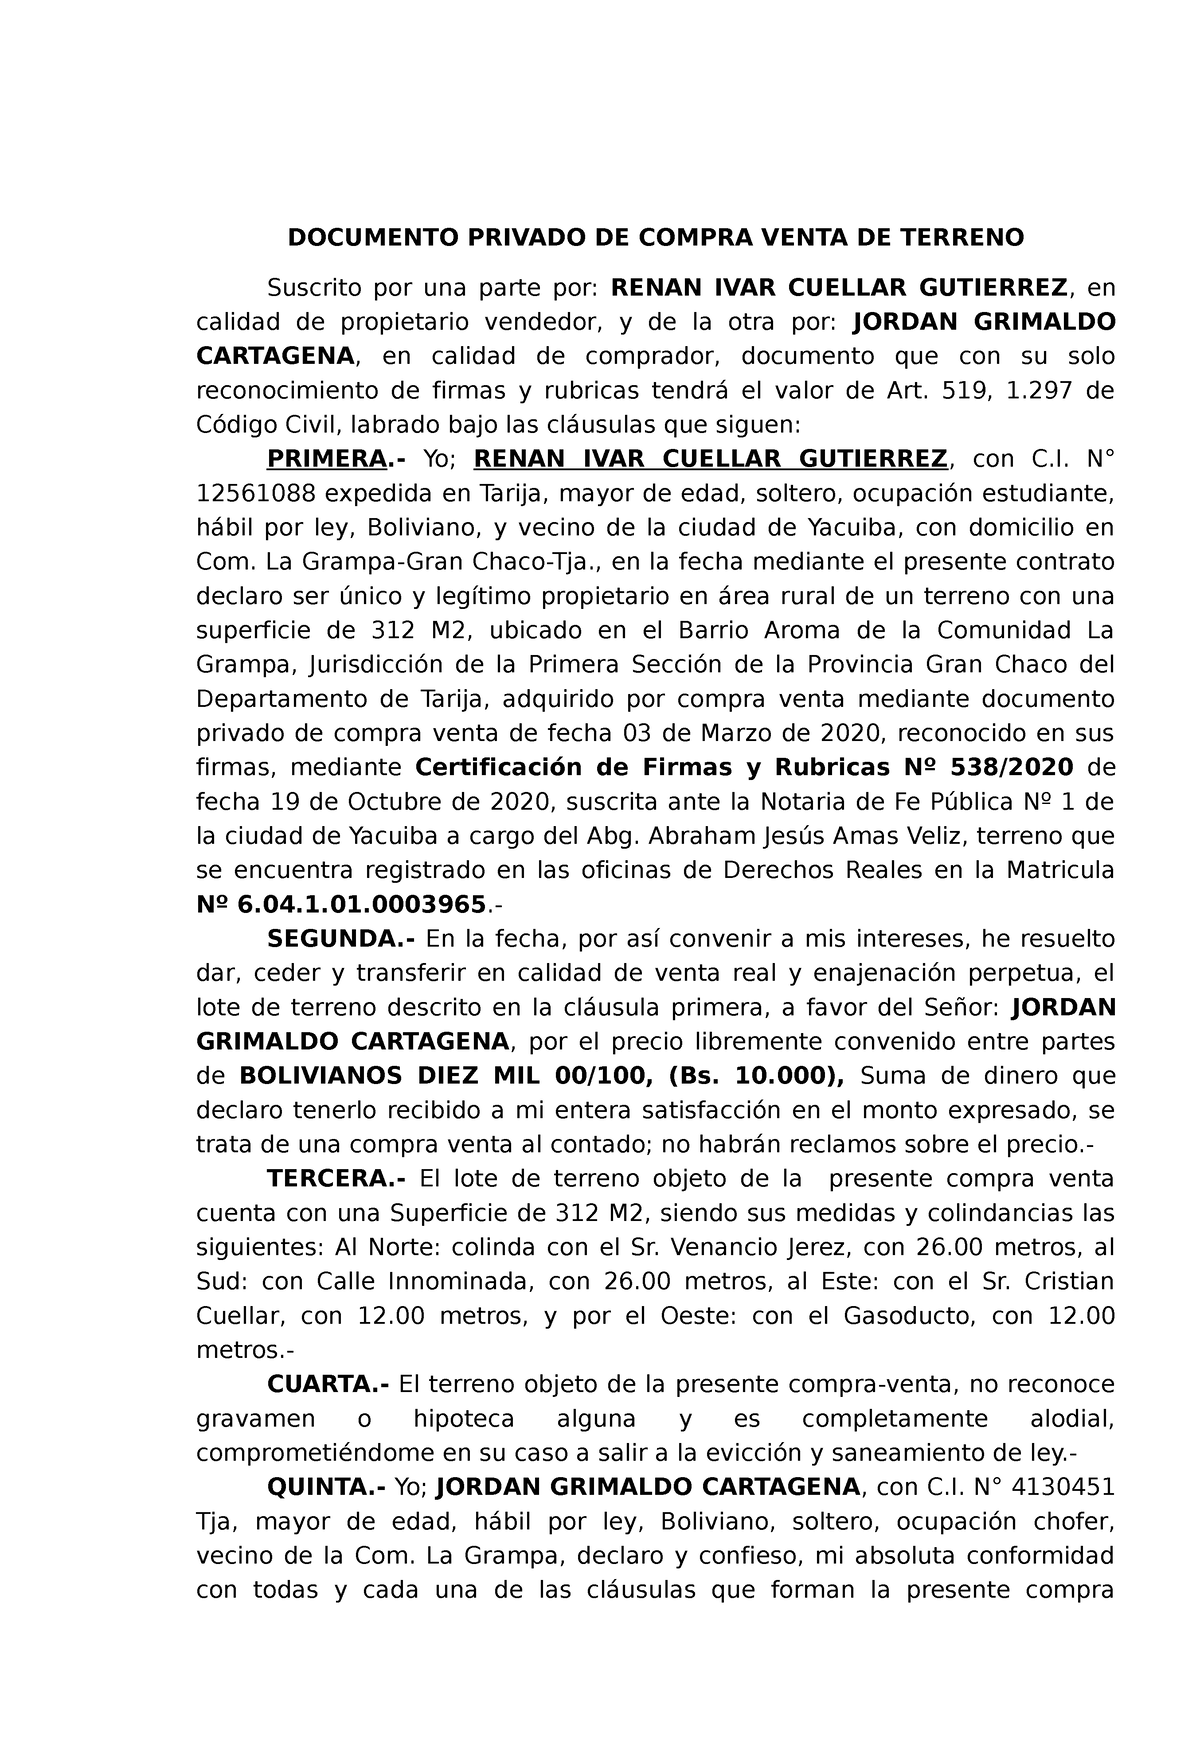 Documento Privado Compra Venta De Terreno Documento Privado De Compra Venta De Terreno 8993